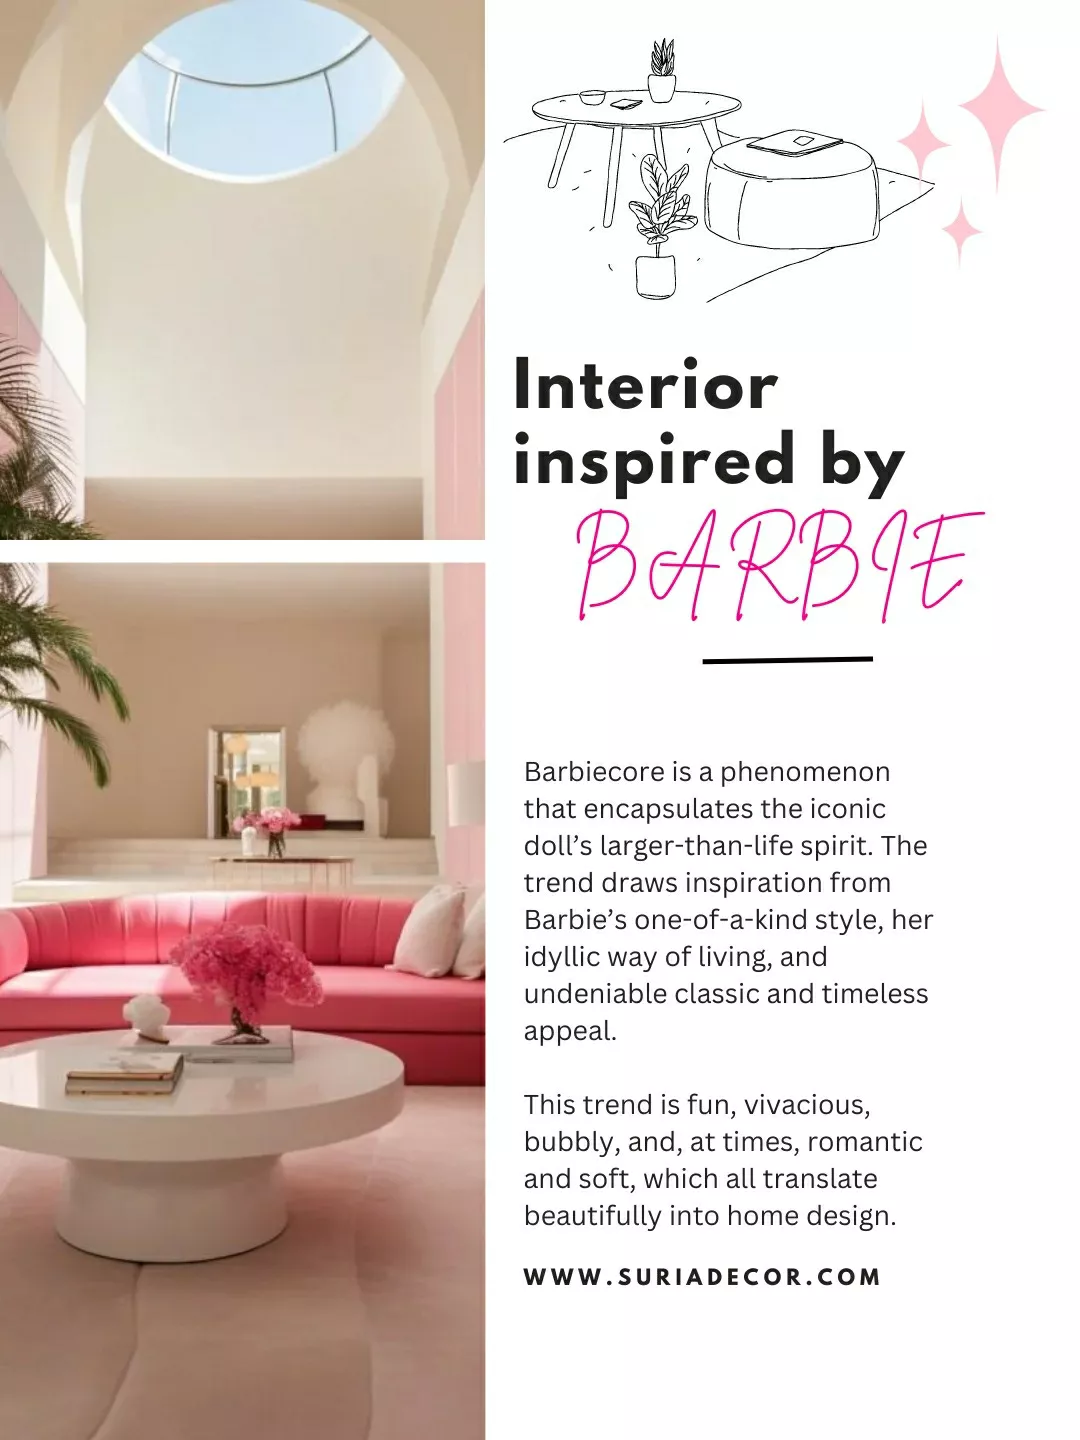 The Barbiecore Interior Design Trend & Minimalism Aesthetic